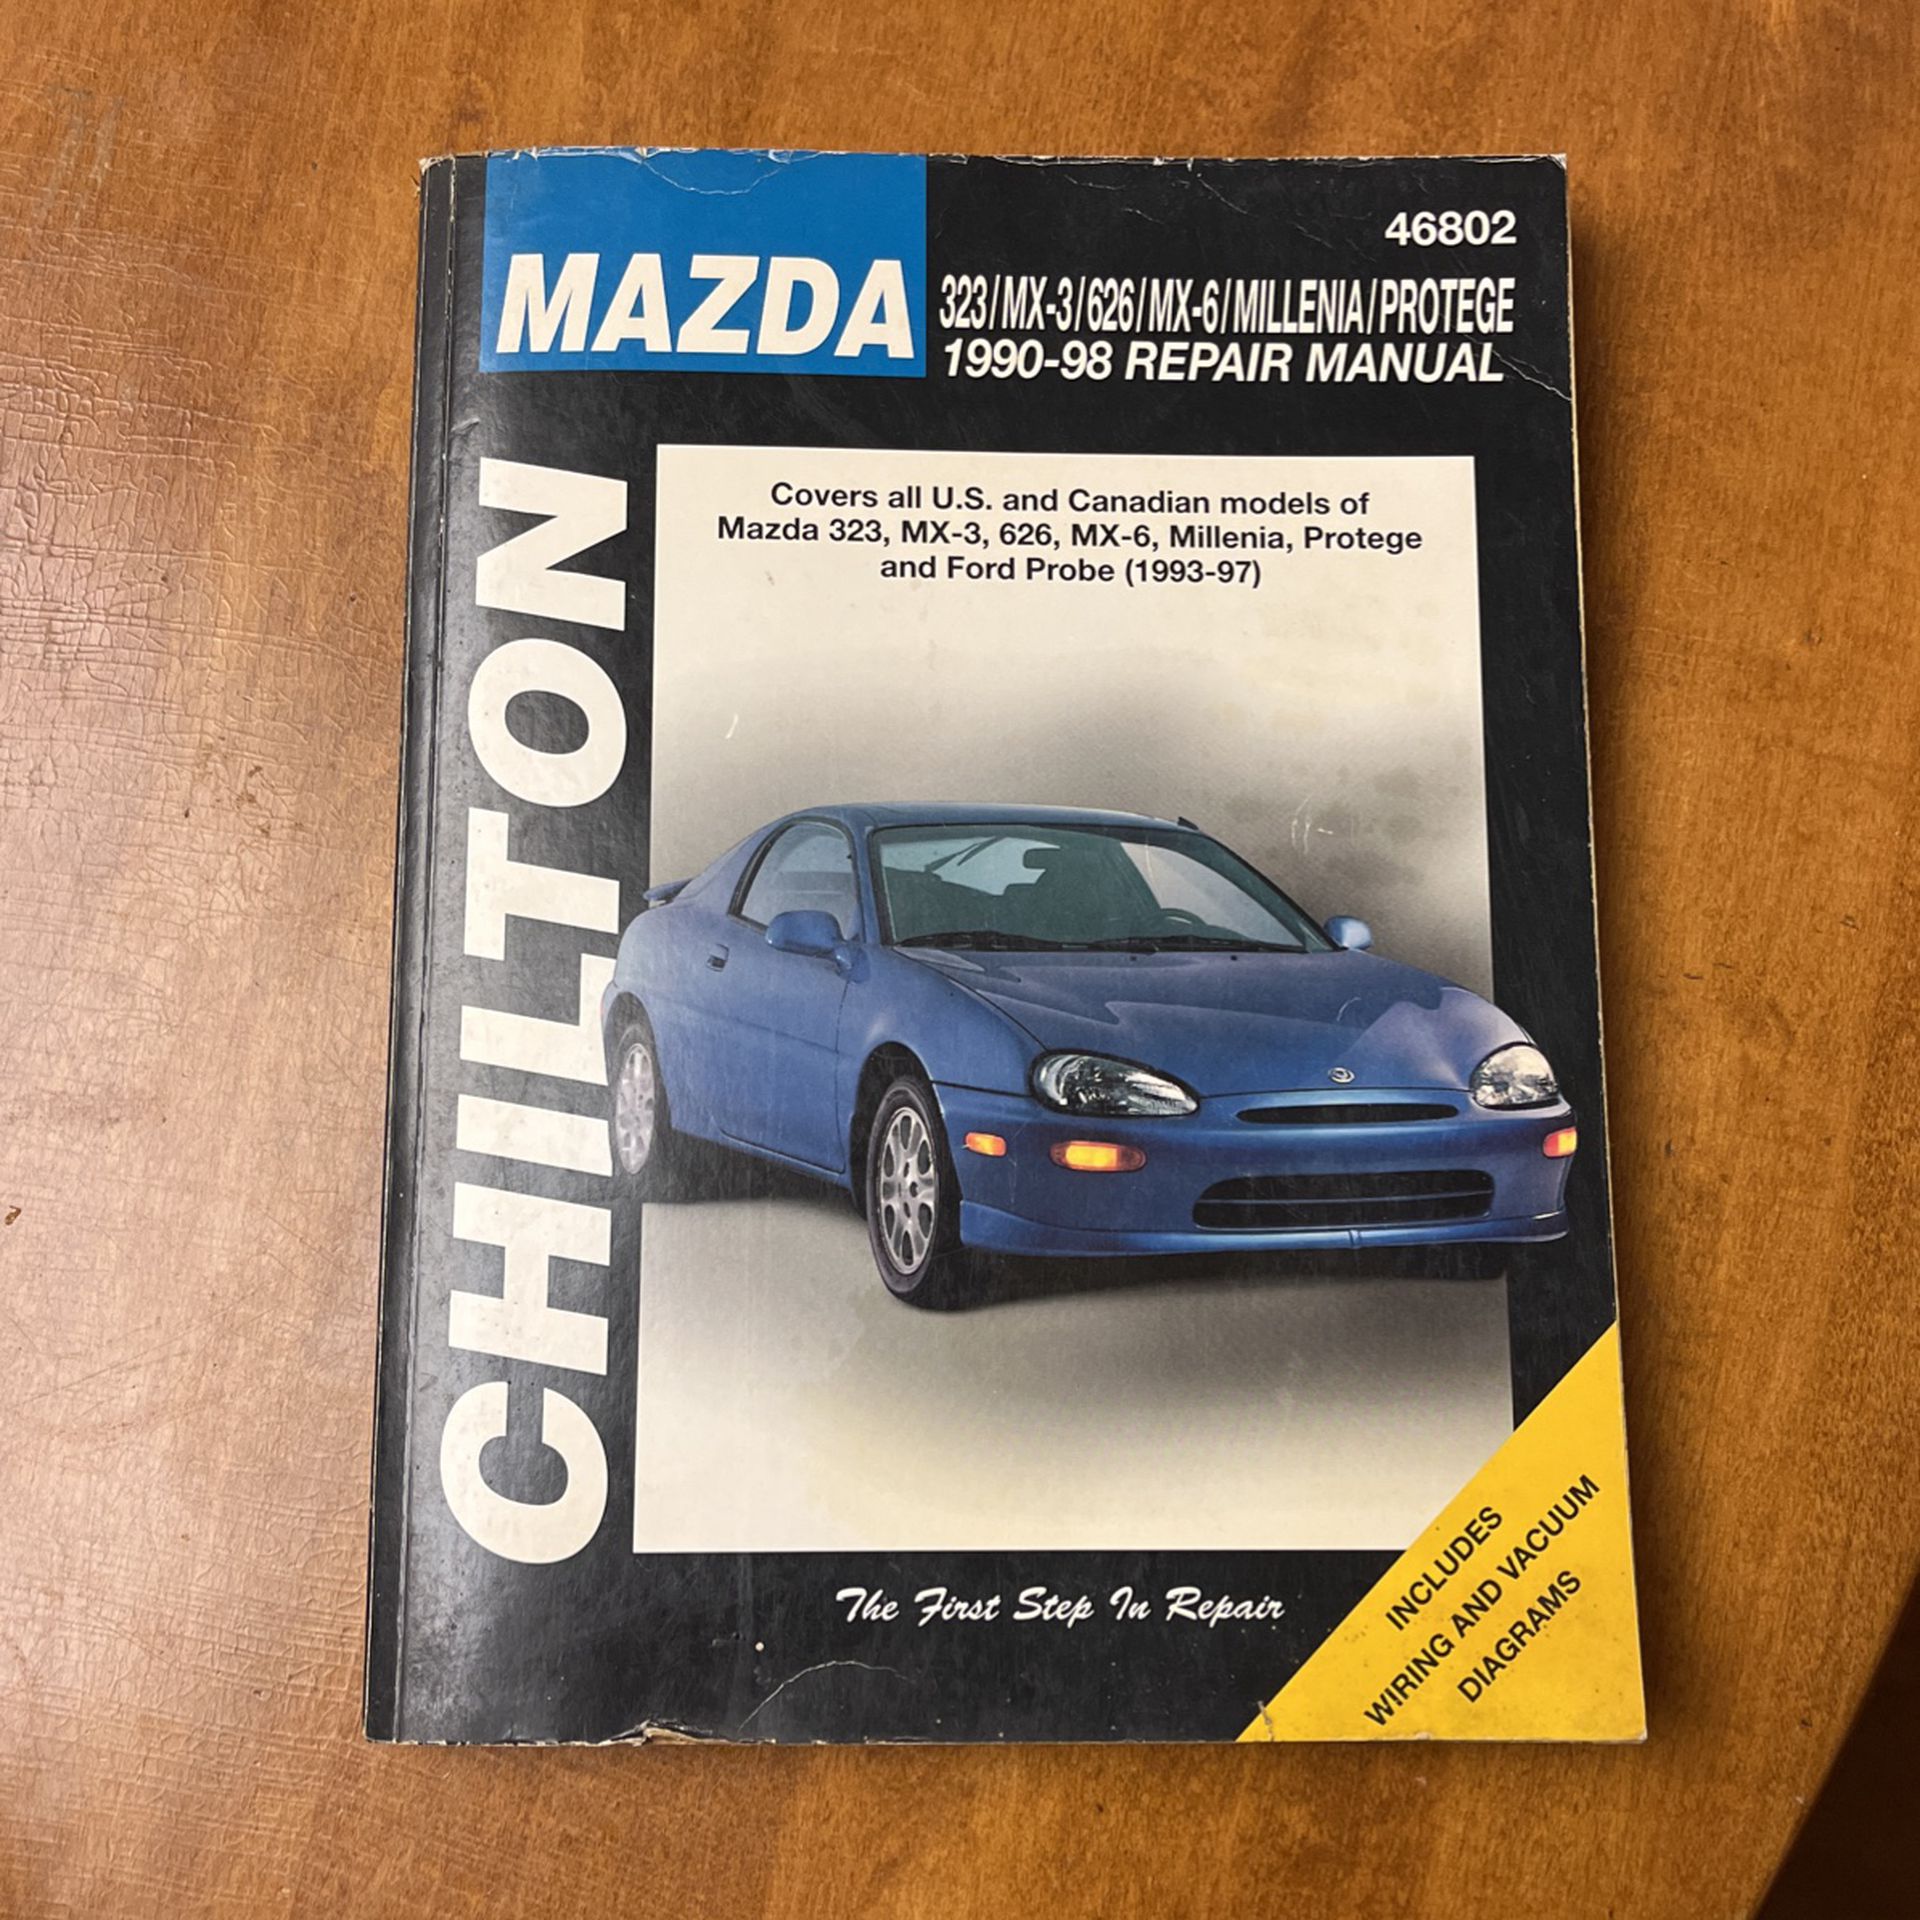 Chilton Repair Manual For Mazda